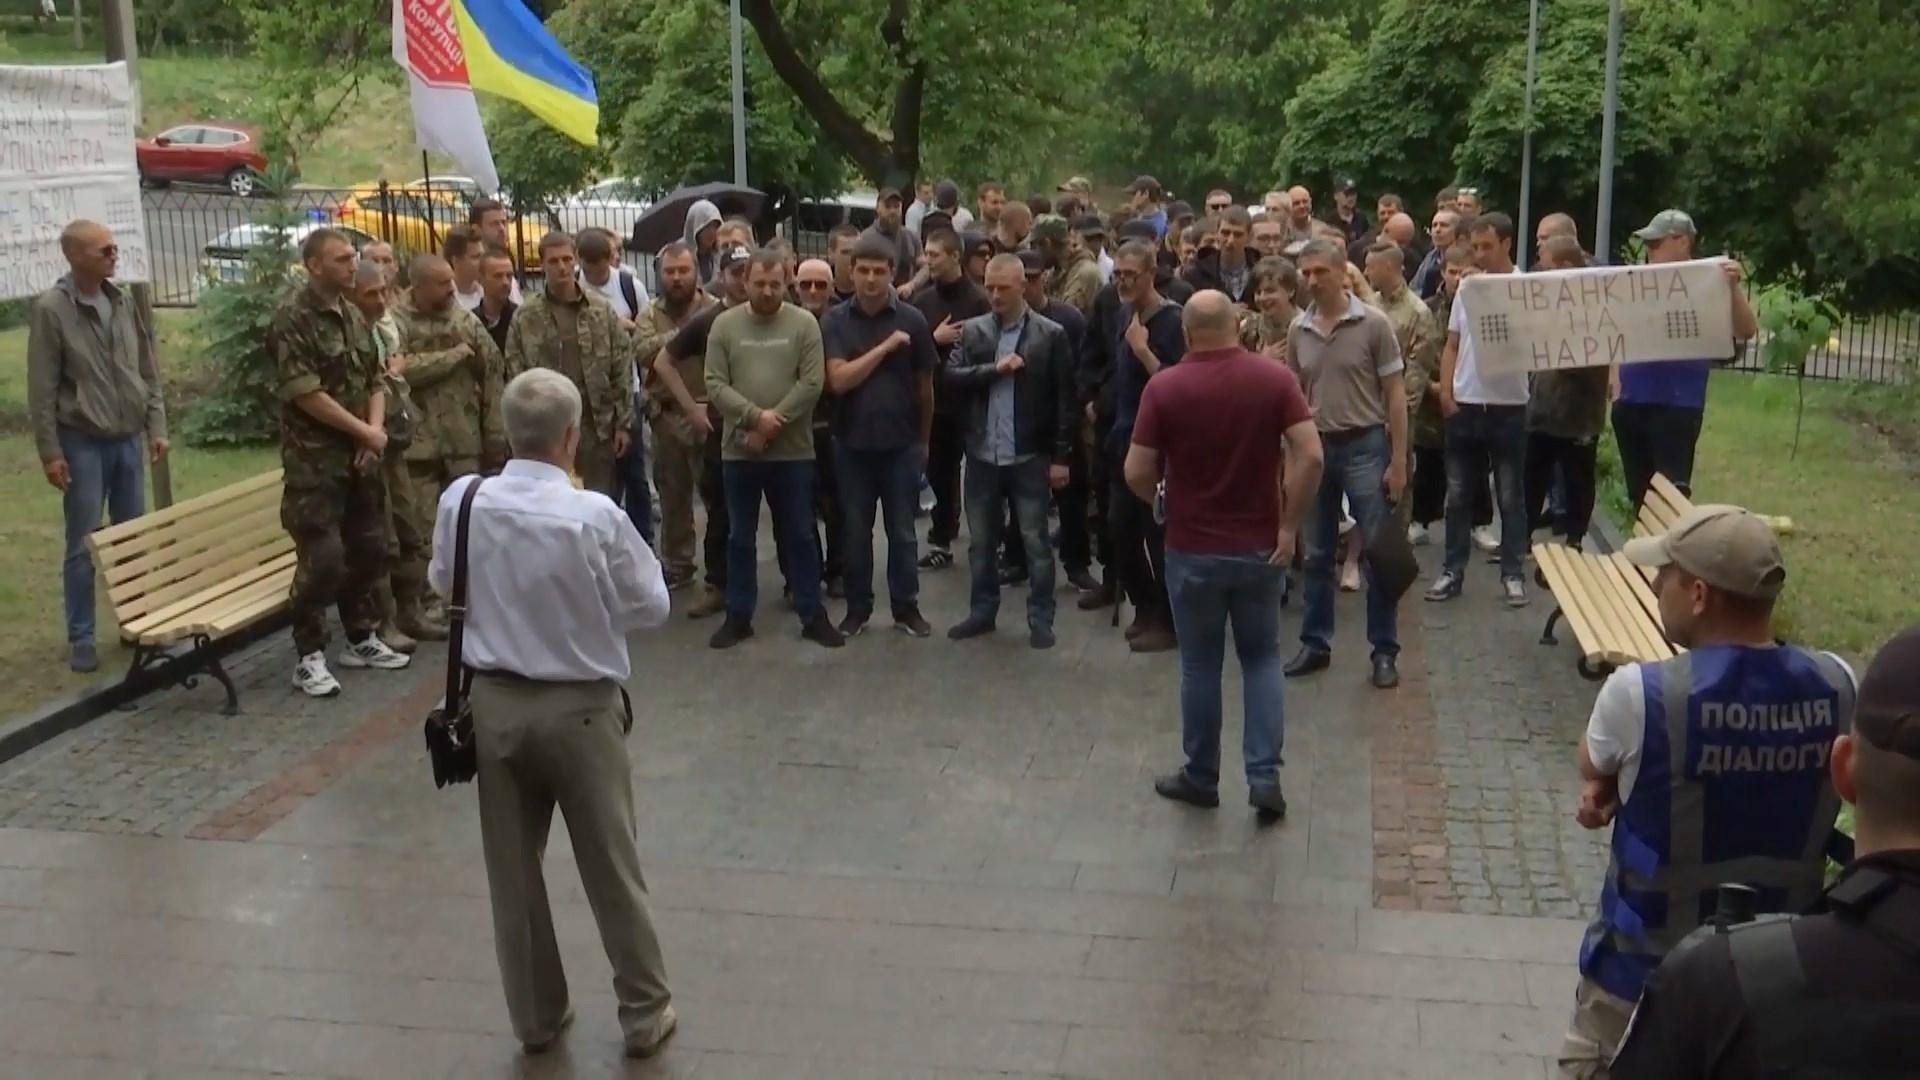 В Киеве активисты протестуют против судьи, возможно причастного к коррупционным схемам: детали